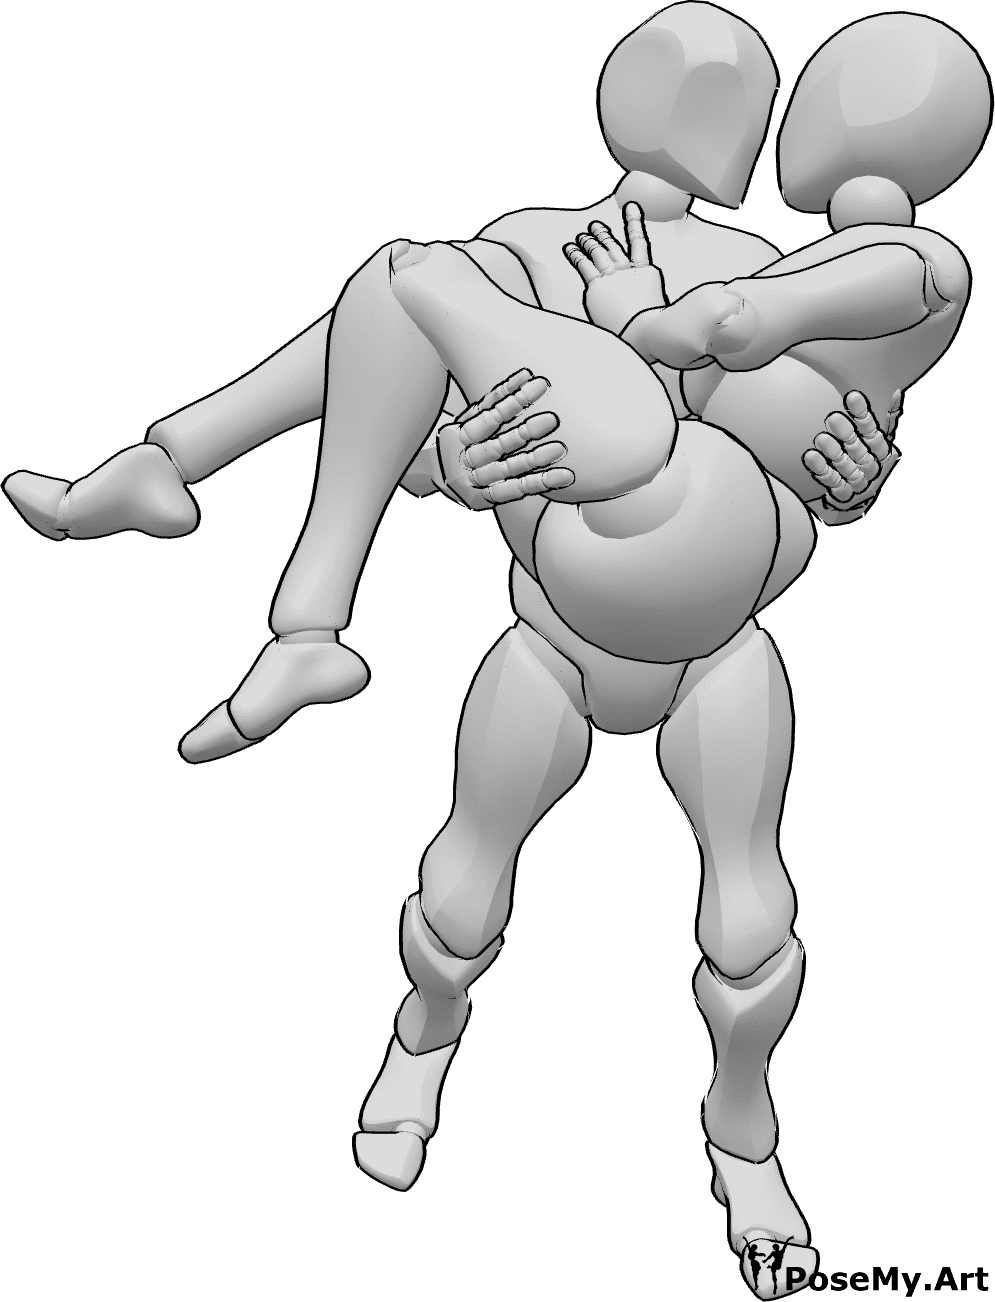 Referência de poses- Homem carrega pose de mulher - Homem carrega mulher e beija-a em pose